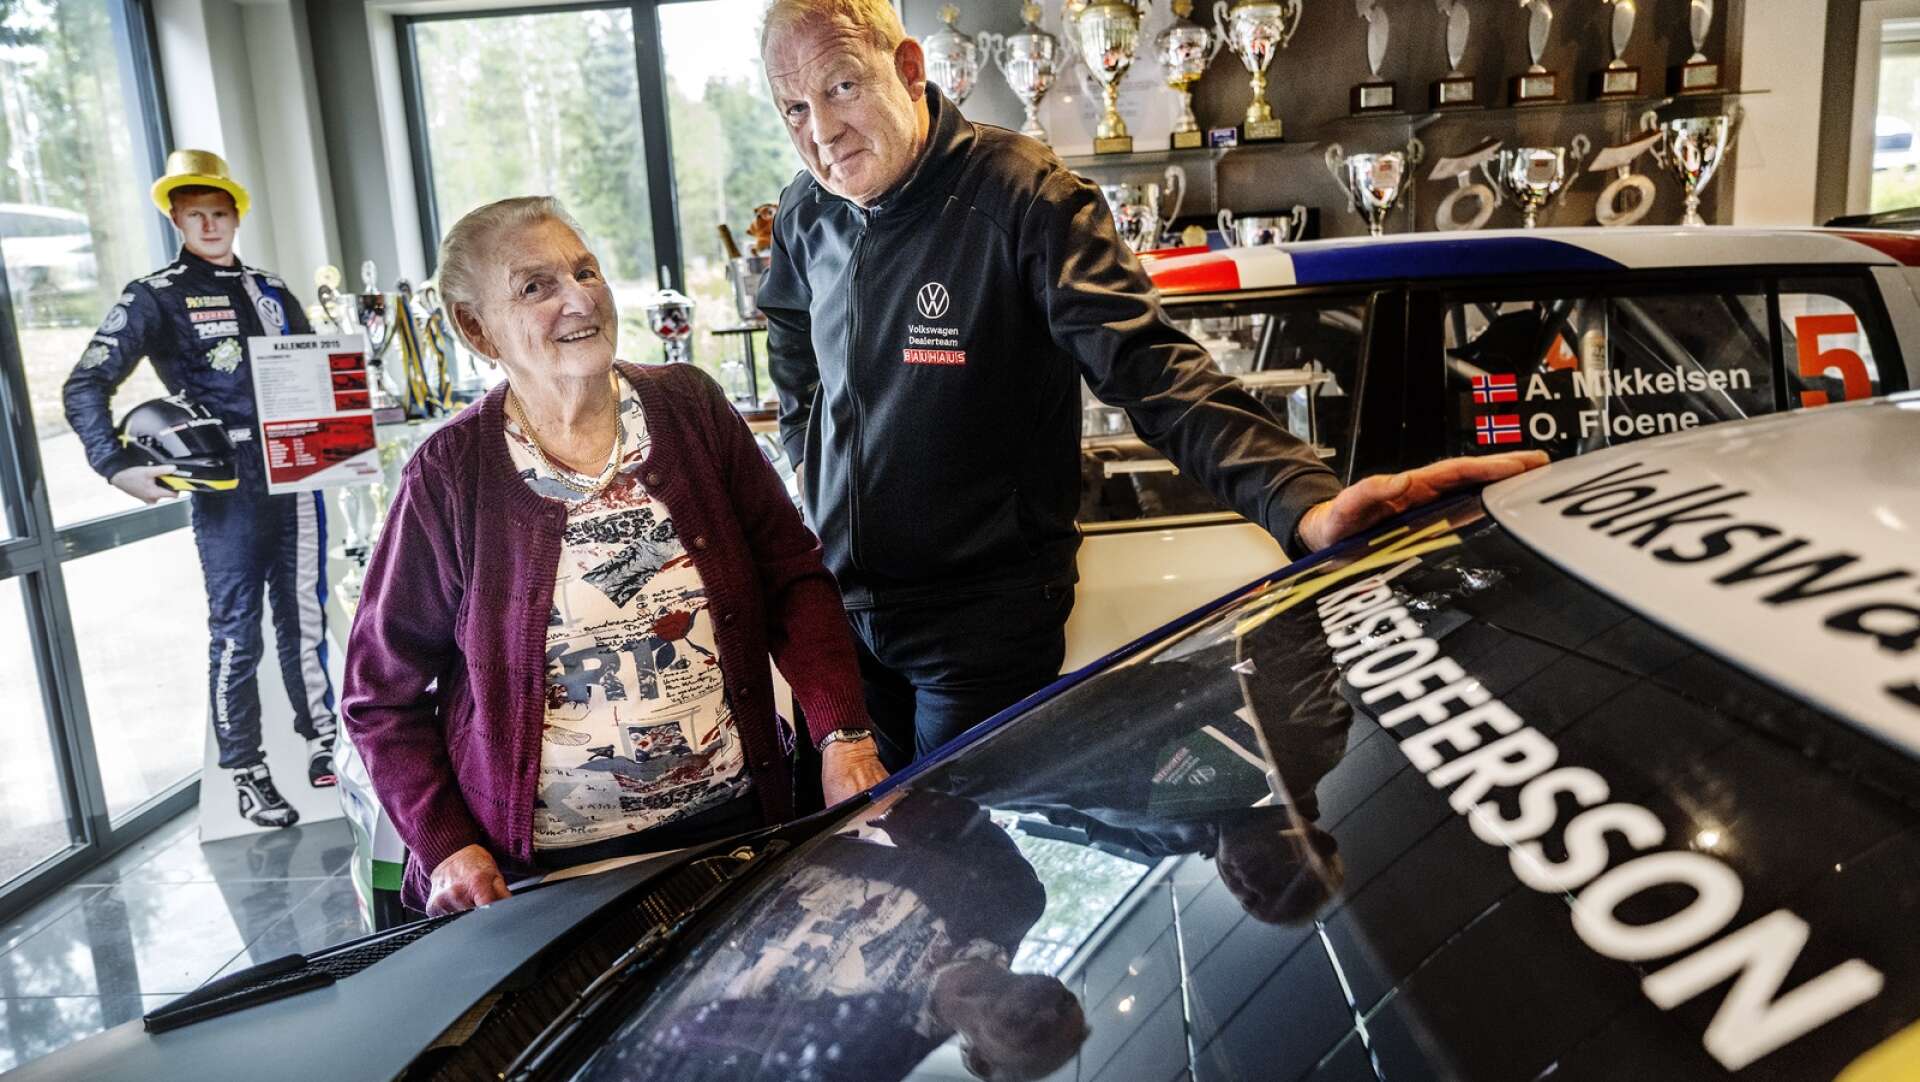 87 år och ekonomichef för världens bästa rallycrossteam! Johan Kristofferssons farmor och Tommy Kristofferssons mamma Gerd är ett unikum. Men hon väntar fortfarande på en åktur i världsmästarbilen.